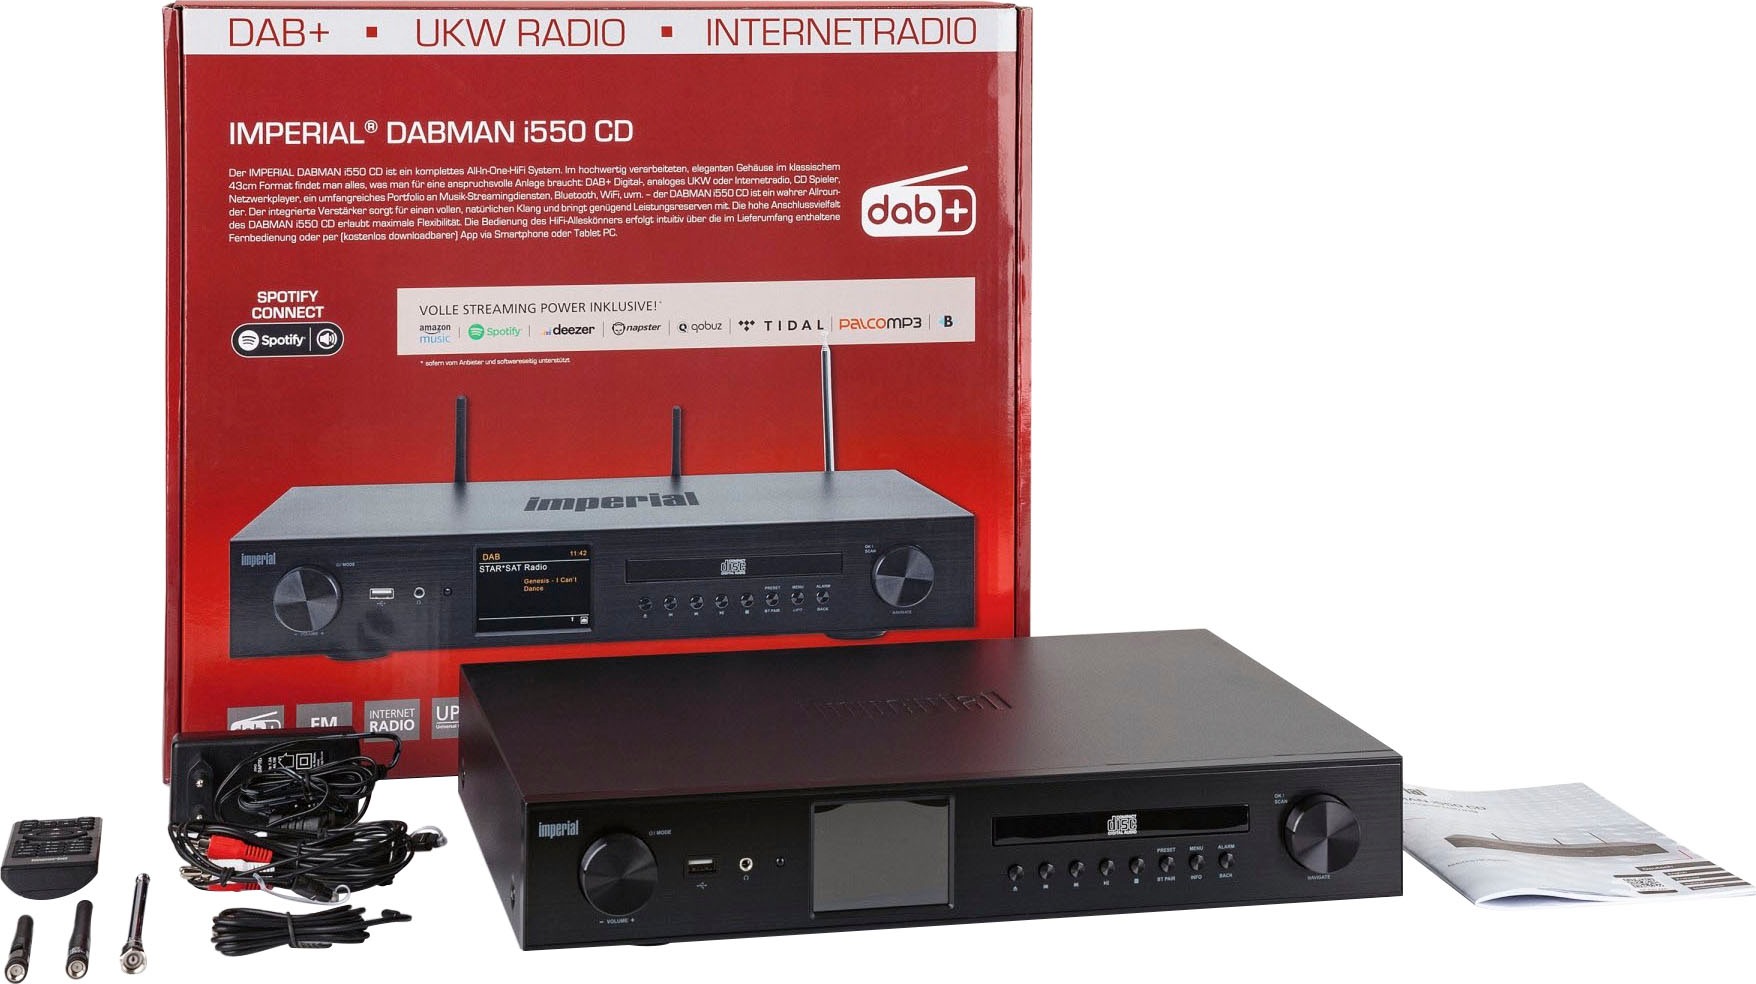 (DAB+)-UKW BAUR Digitalradio CD«, 84 mit W) (Bluetooth-WLAN | by IMPERIAL i550 (DAB+) TELESTAR »DABMAN RDS Digitalradio